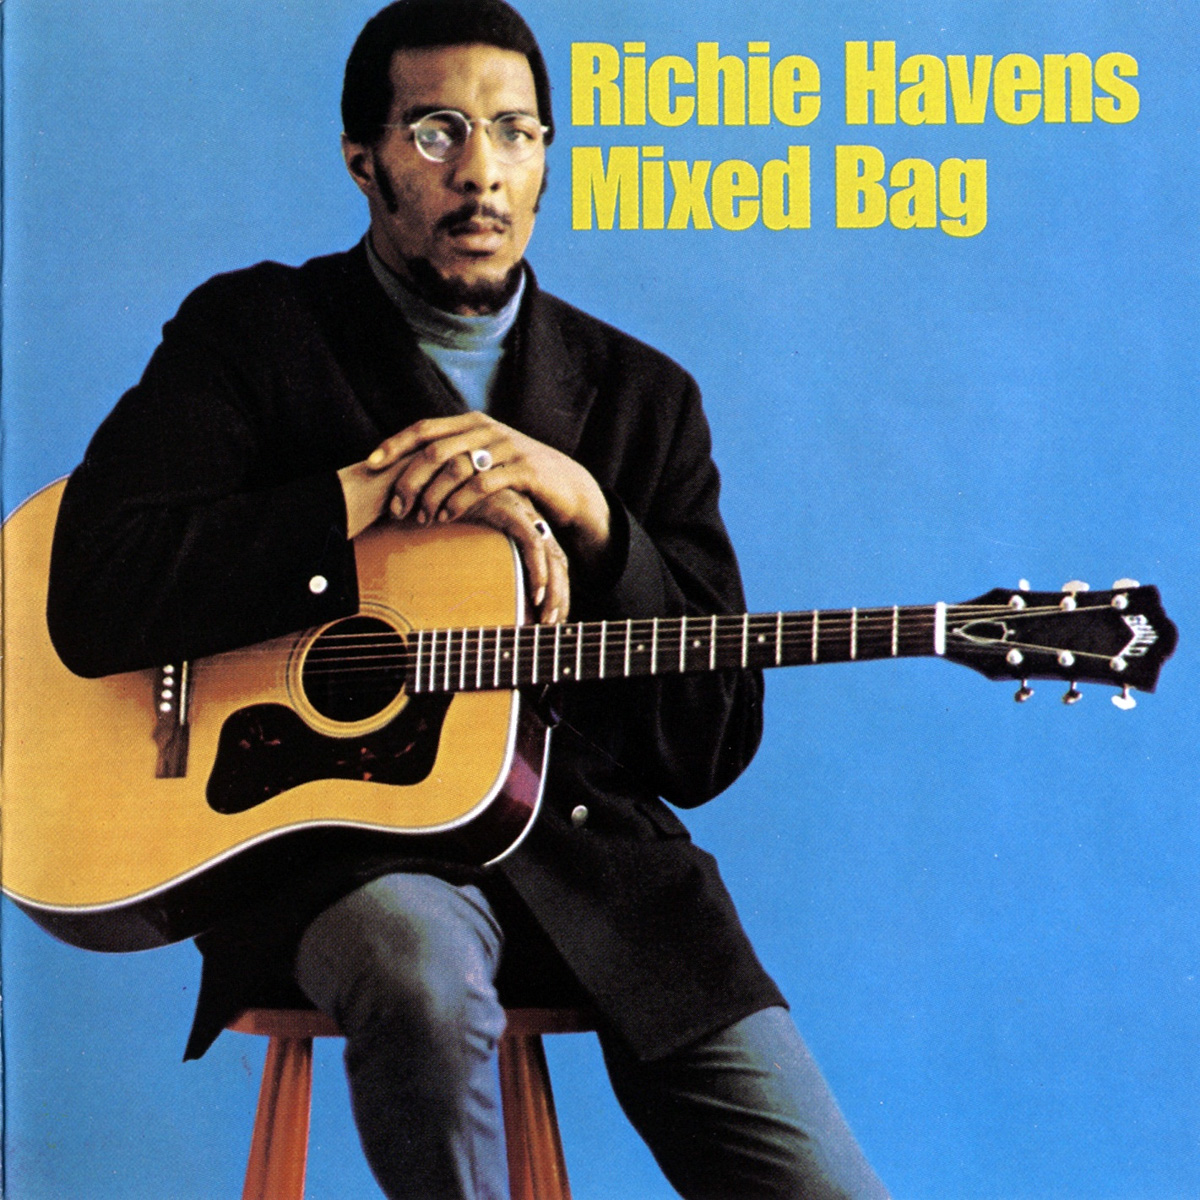 Richie Havens Mixed Bag LP Art 1967